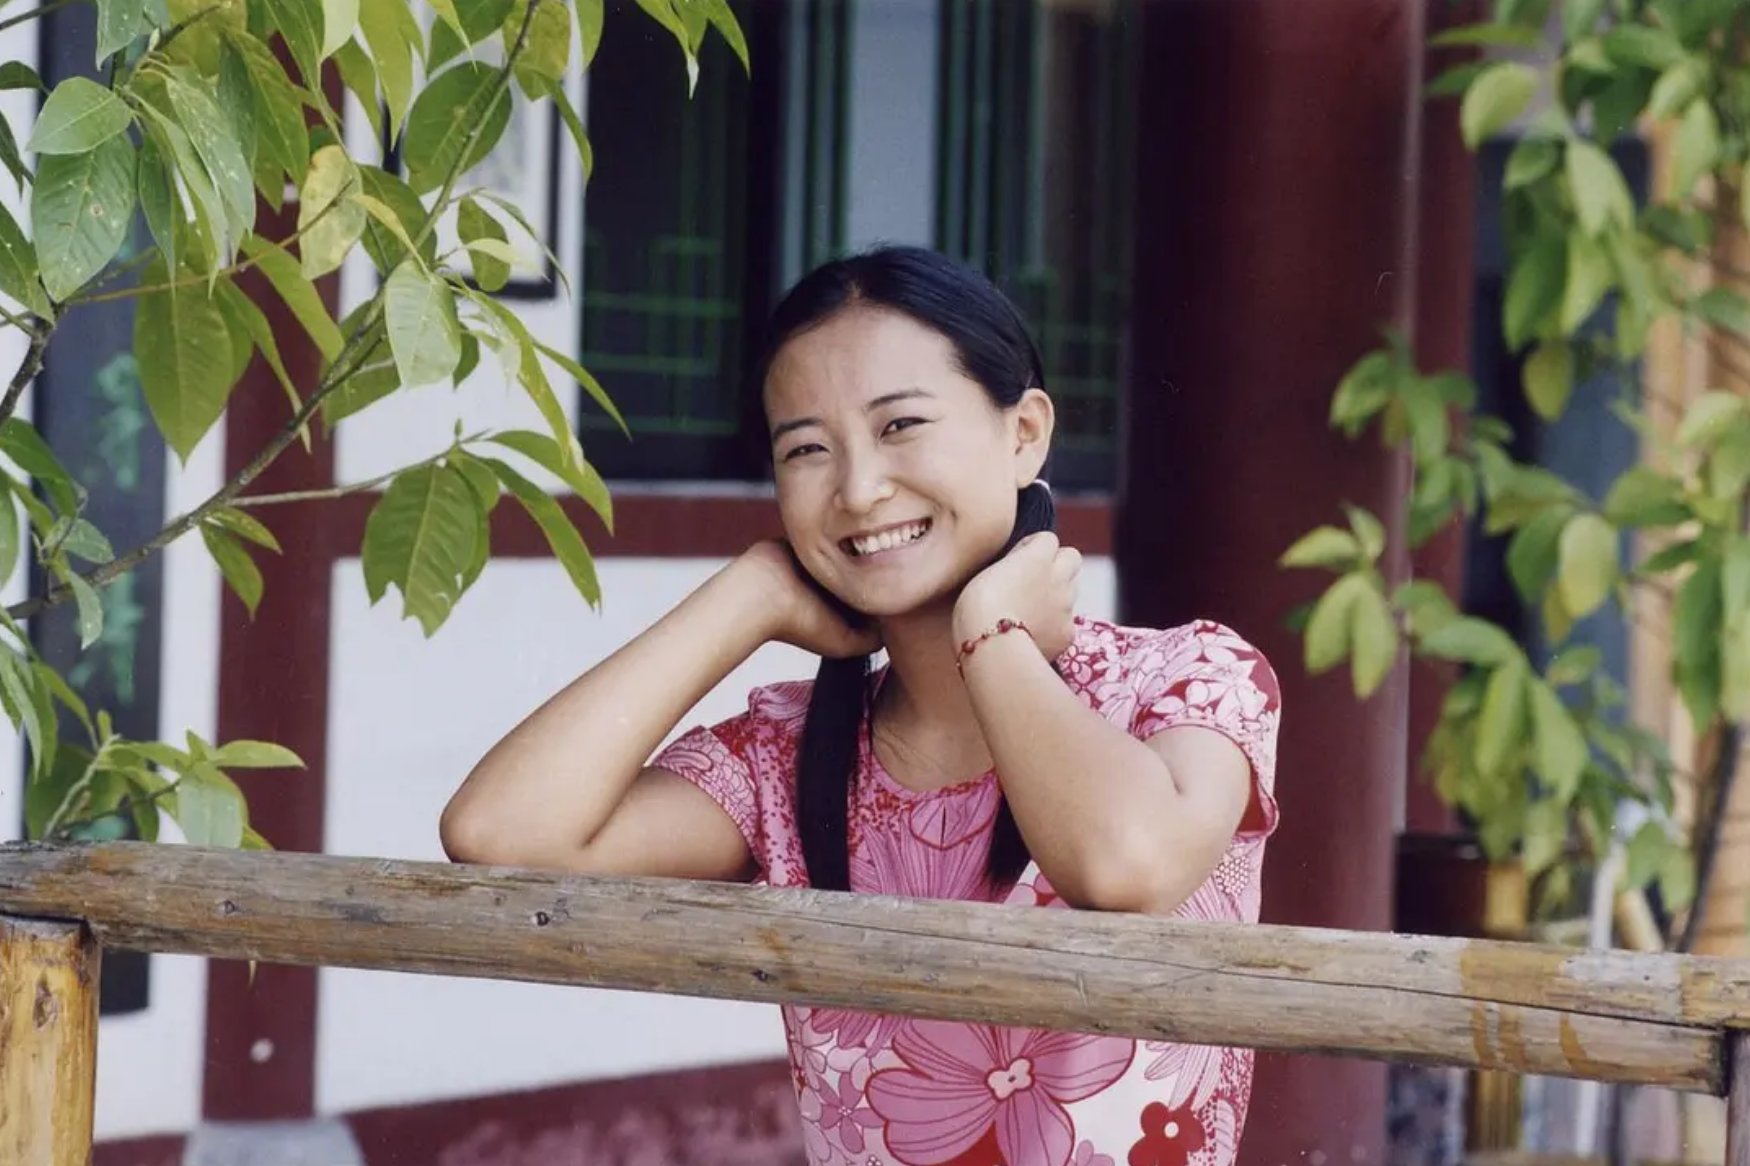 贾玲,原名贾裕玲1982年湖北襄阳的一个普通工人家庭